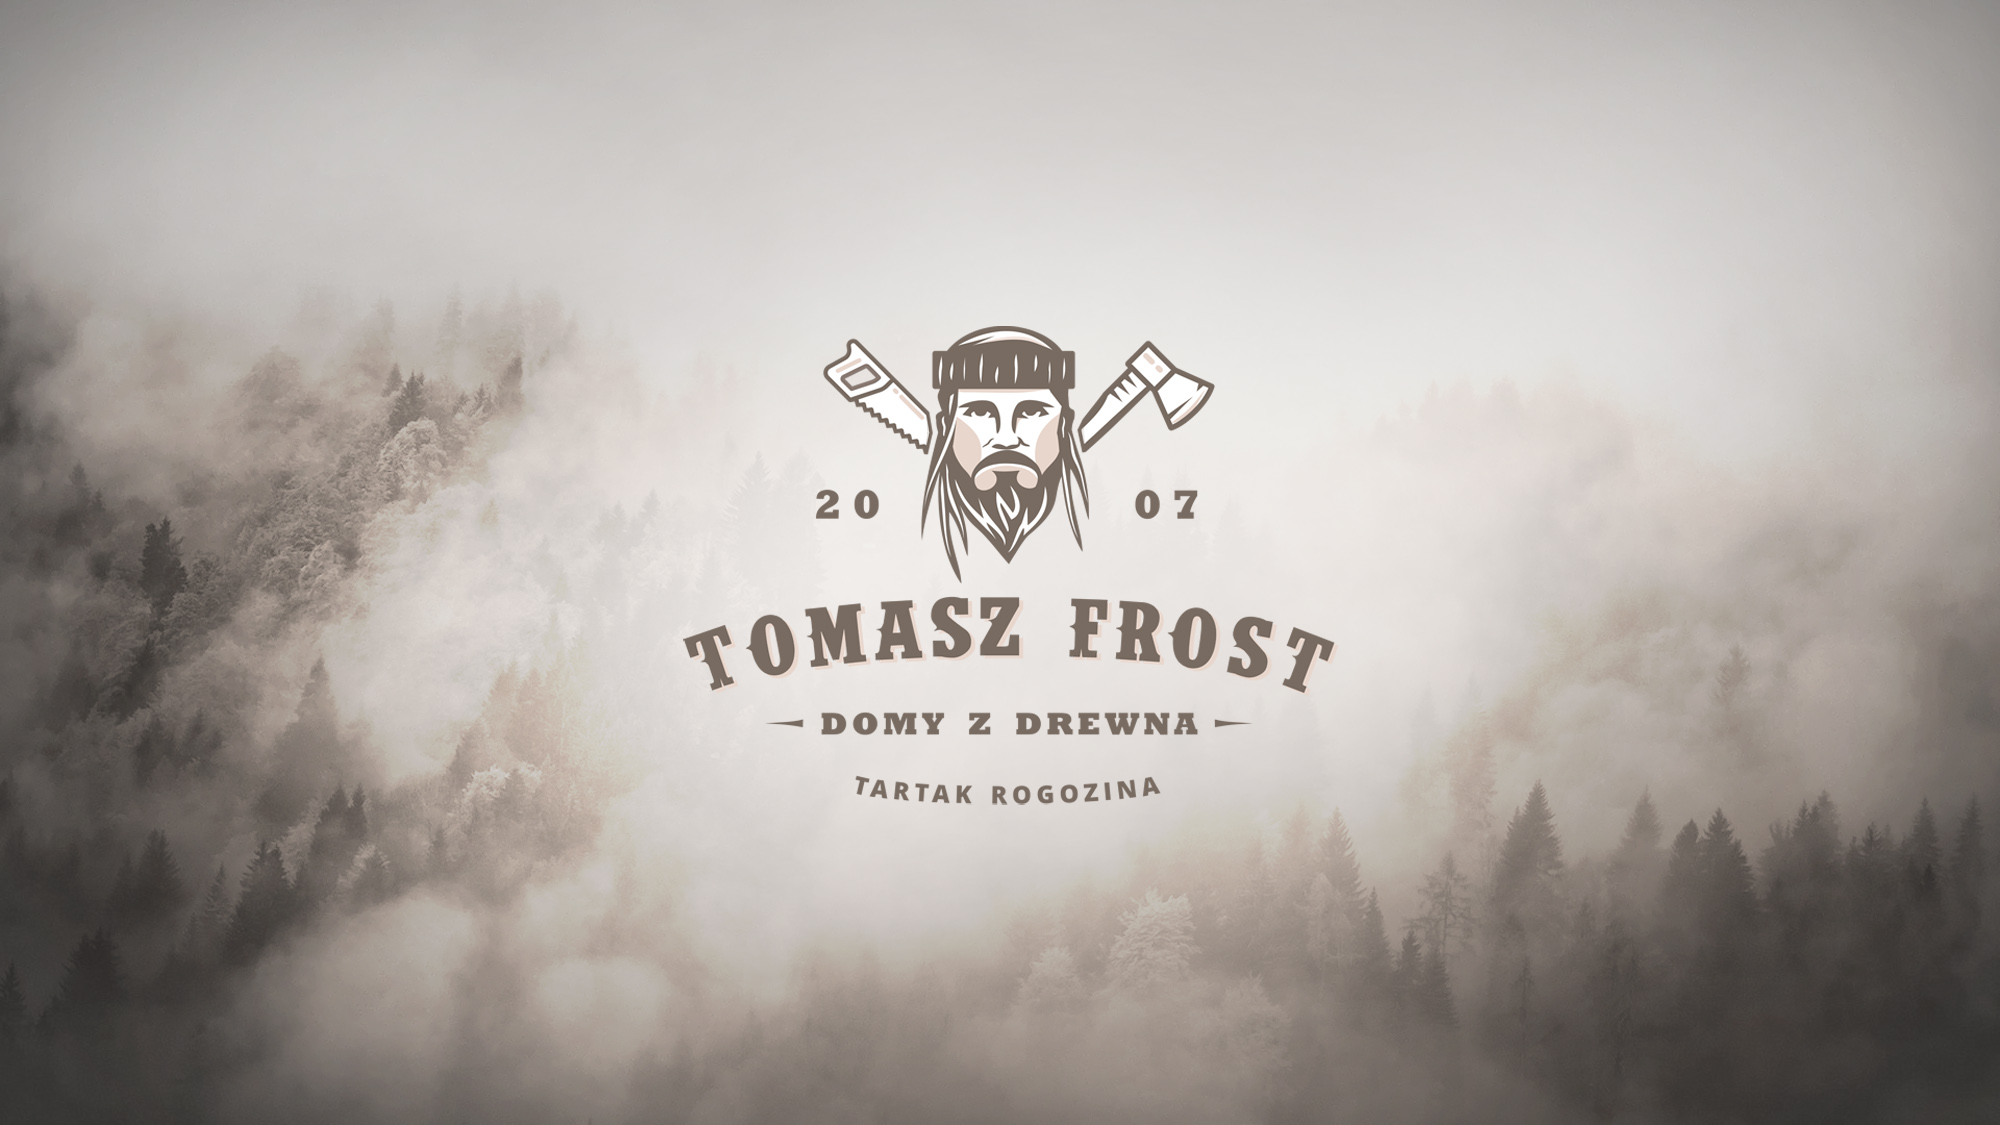 Tomasz Frost - Domy z drewna. Shadowart projekt logo, branding.